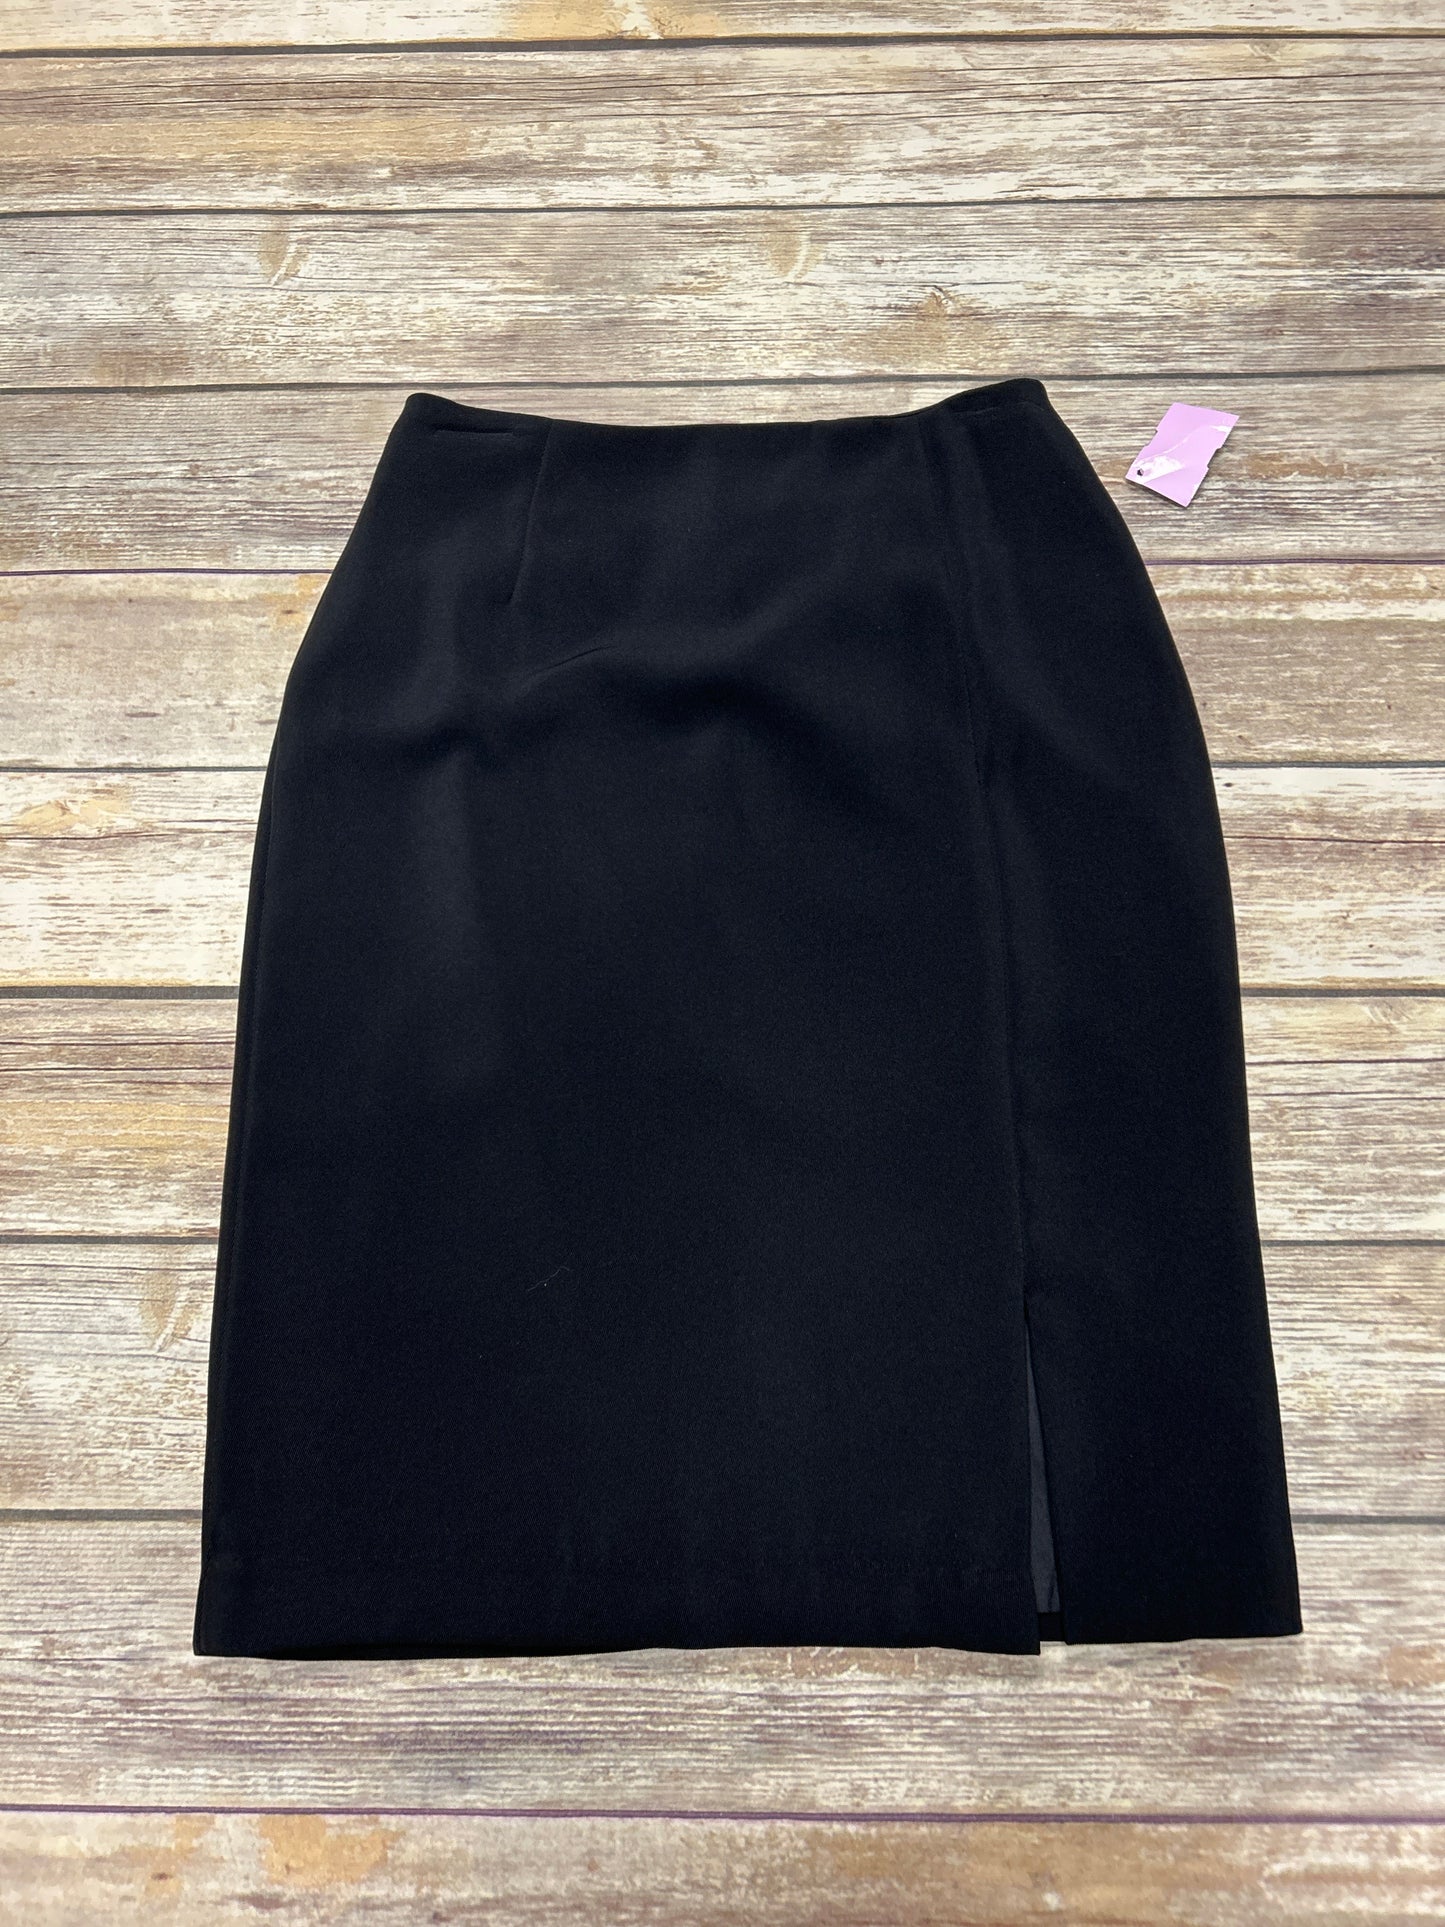 Black Skirt Midi Alia, Size 4